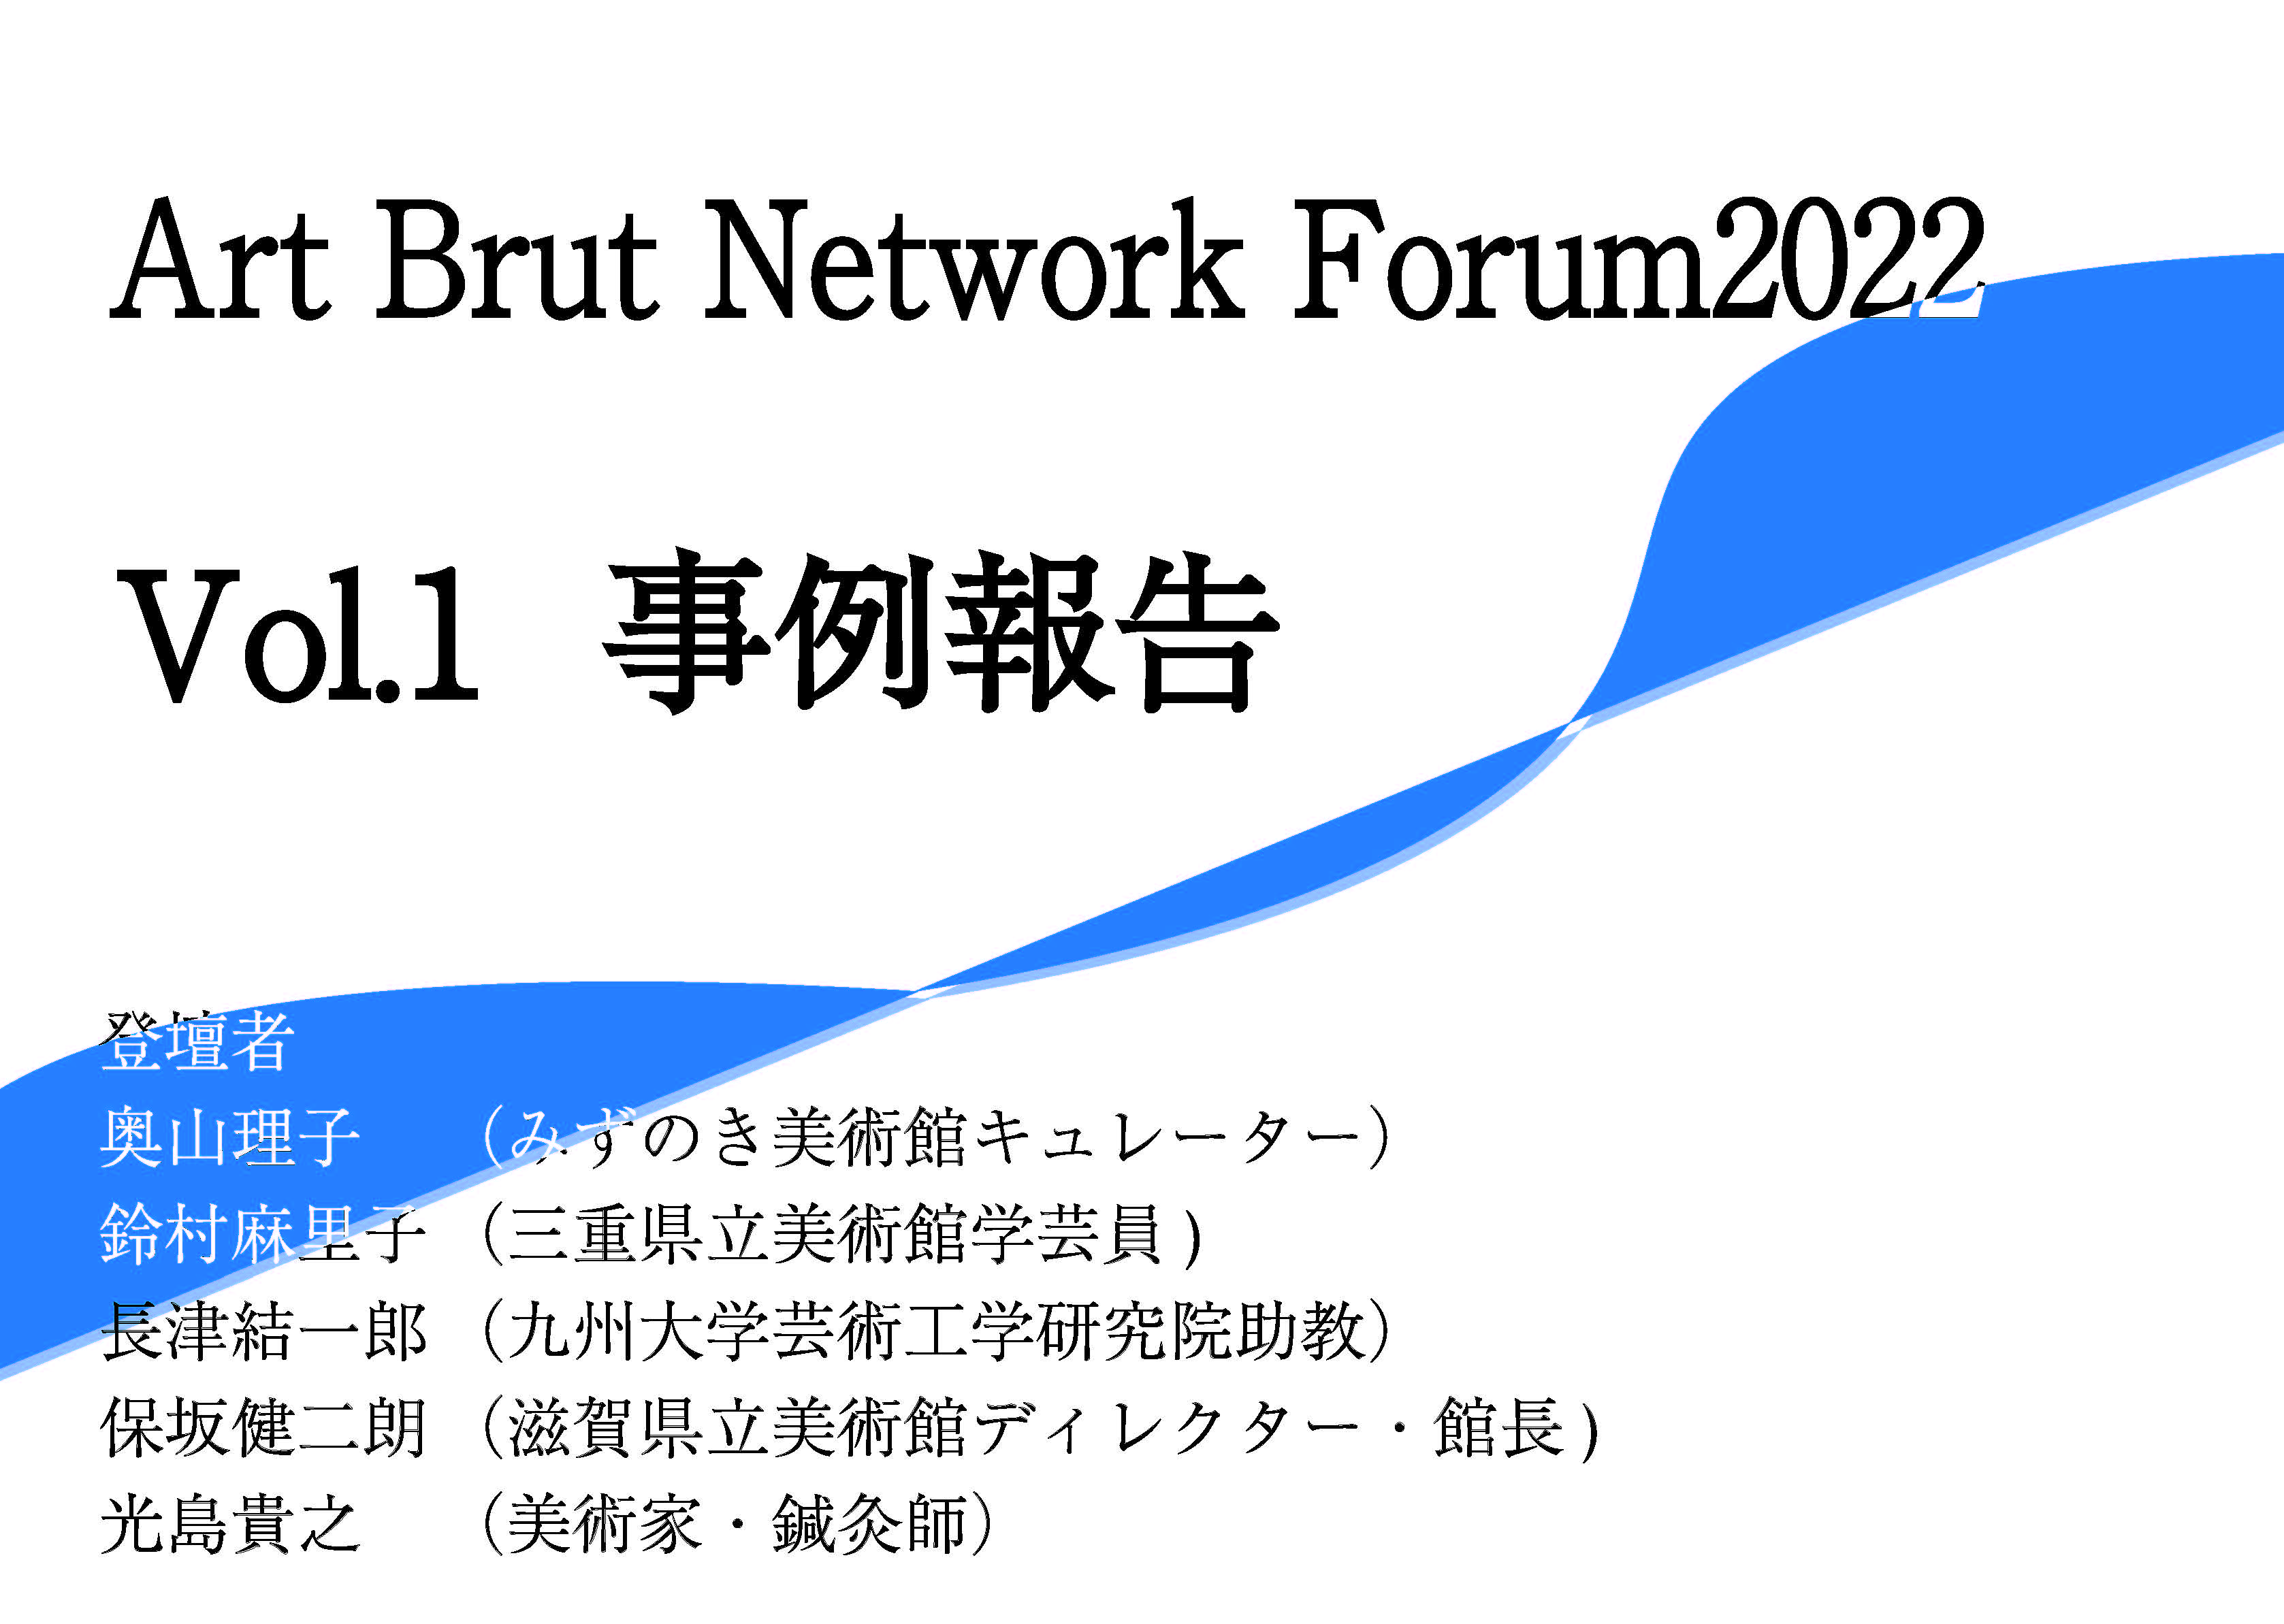 アール・ブリュットネットワークフォーラム2022前半に行われた事例報告の映像リンクが付与された画像